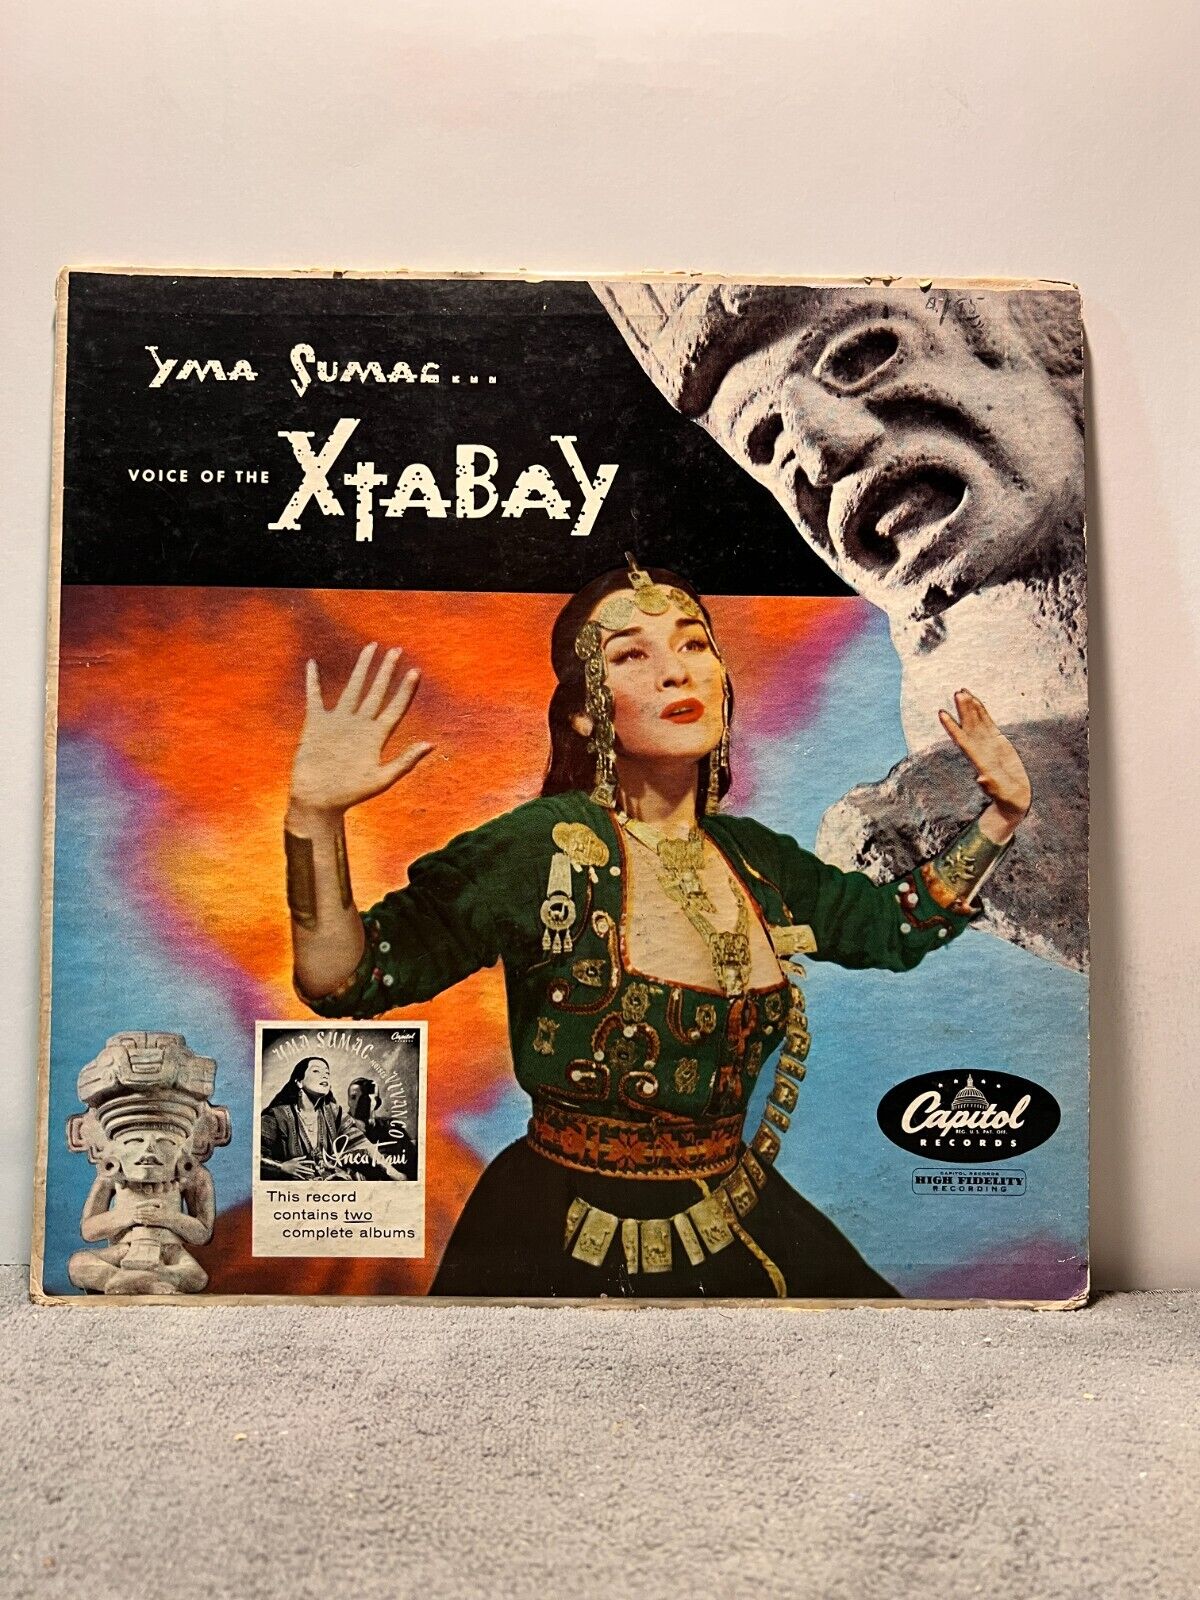 A41 Yma Sumac: Voice Of The Xtabay, 1955 Capitol Records W-684 -Latin Jazz Mambo